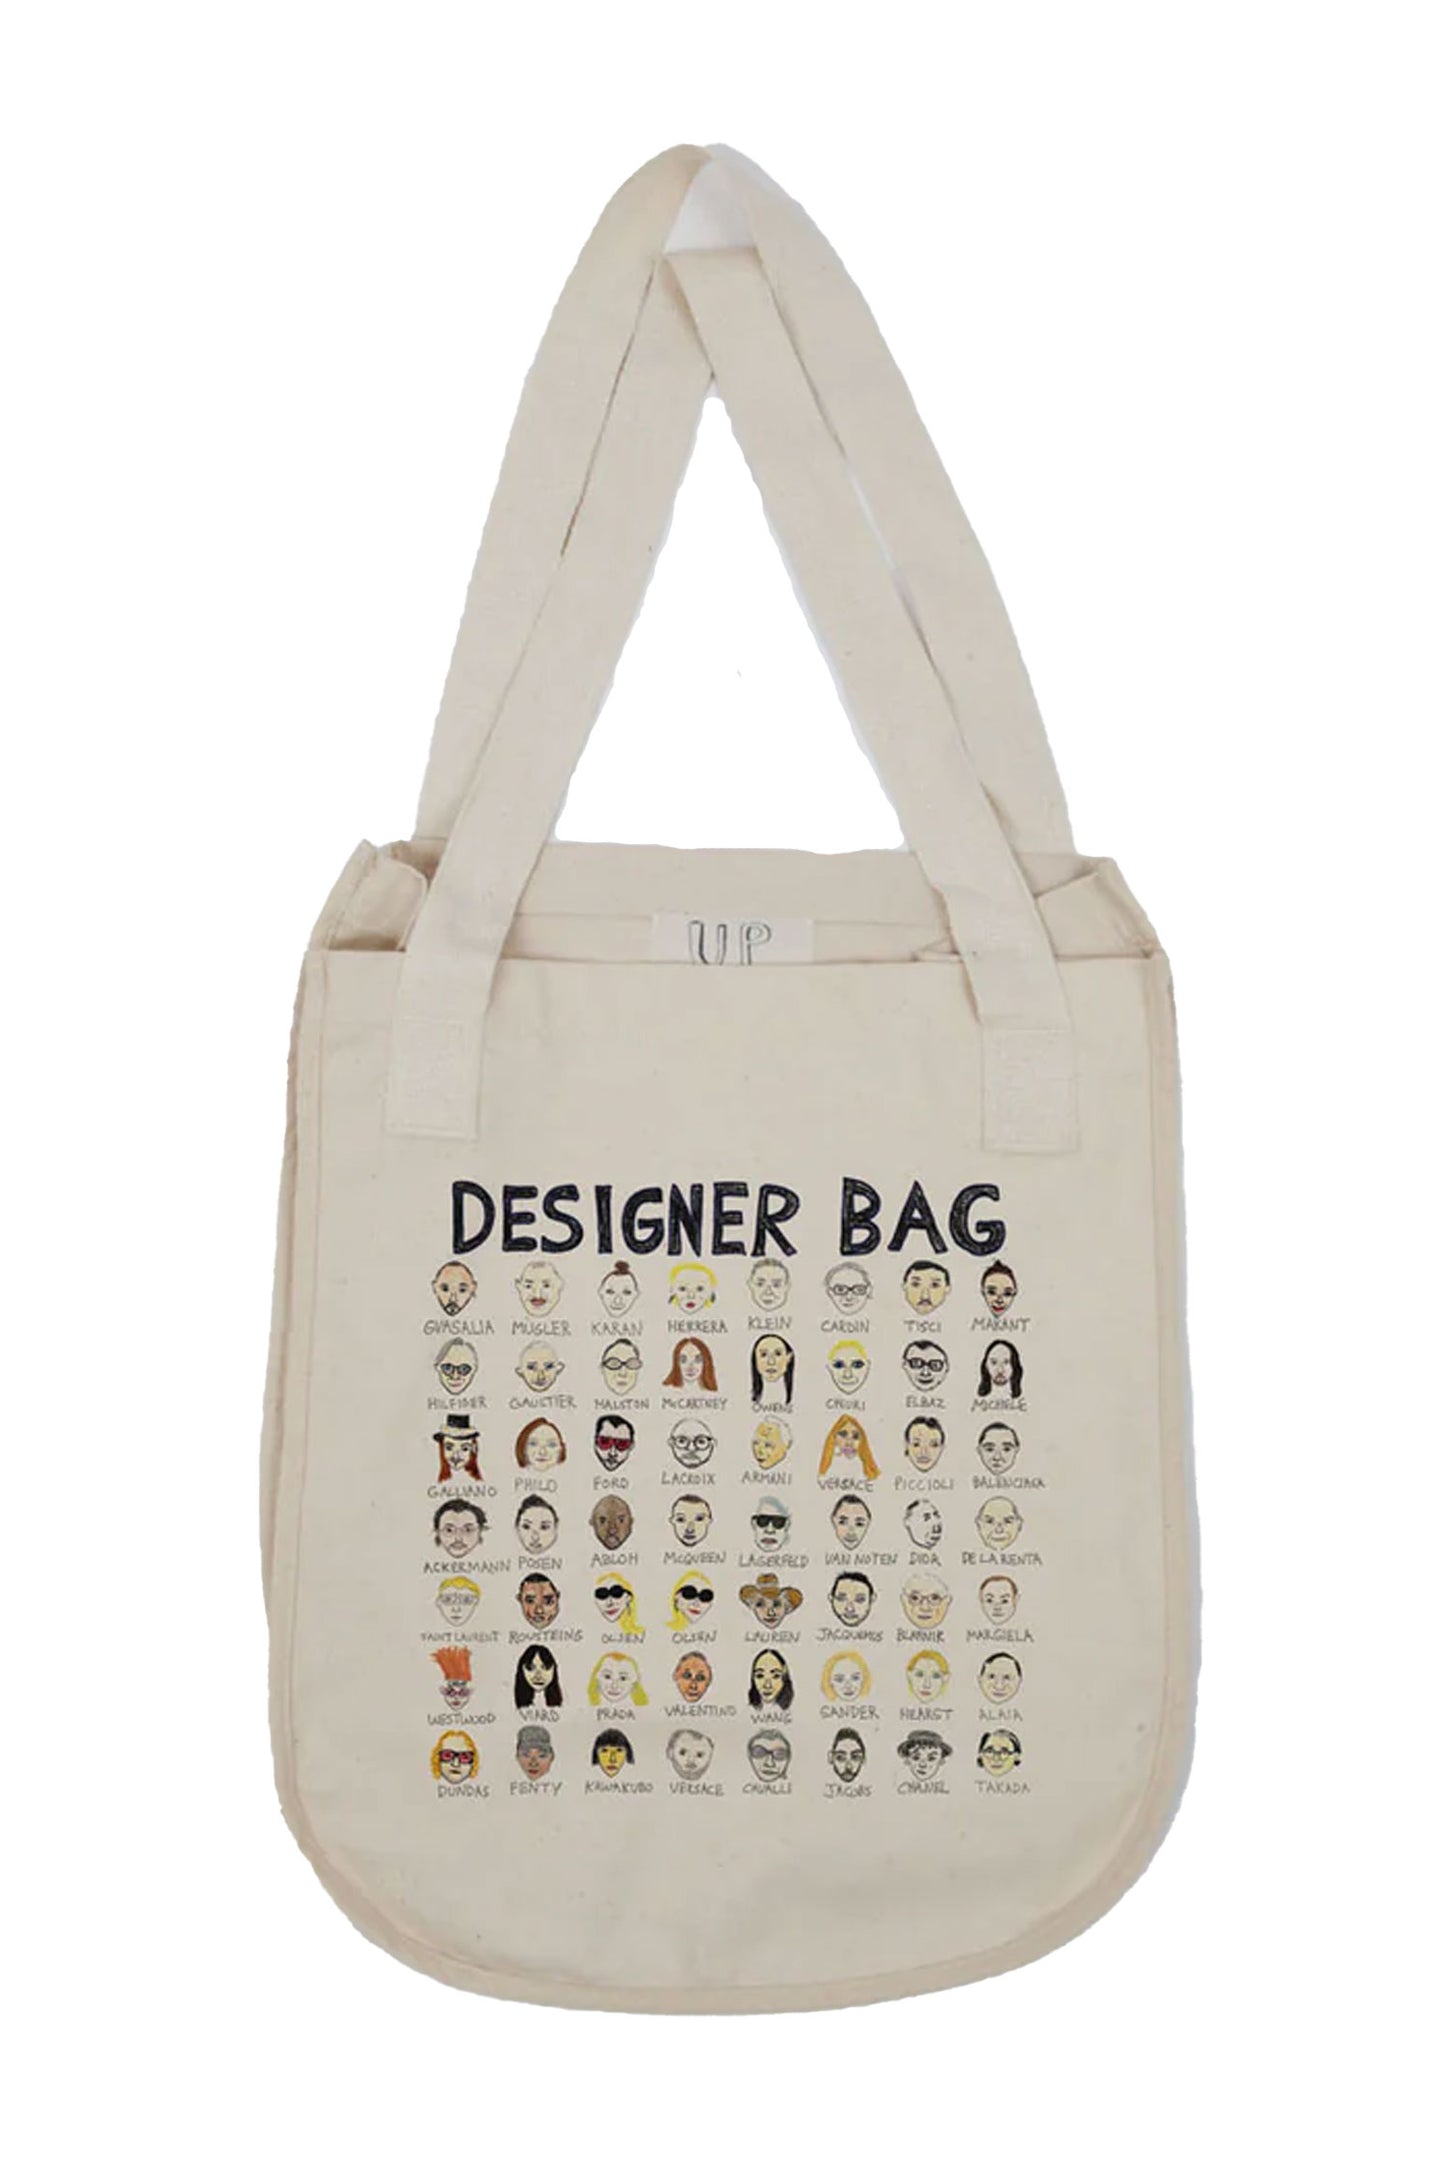 Designer Tote Bag